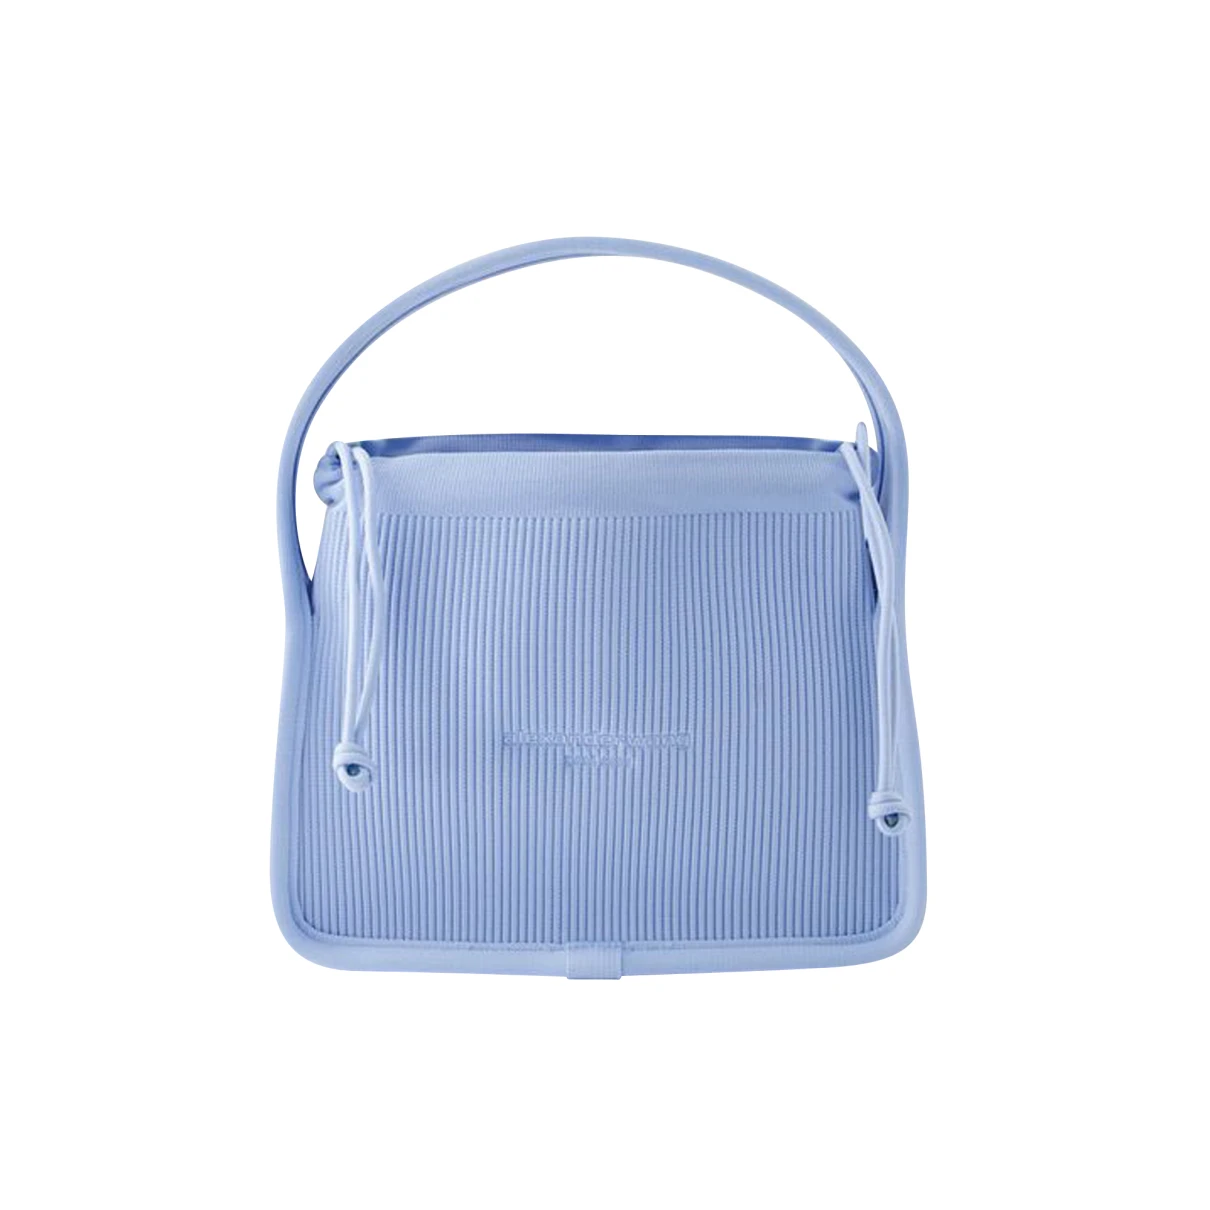 Pre-owned Alexander Wang Handbag In Blue